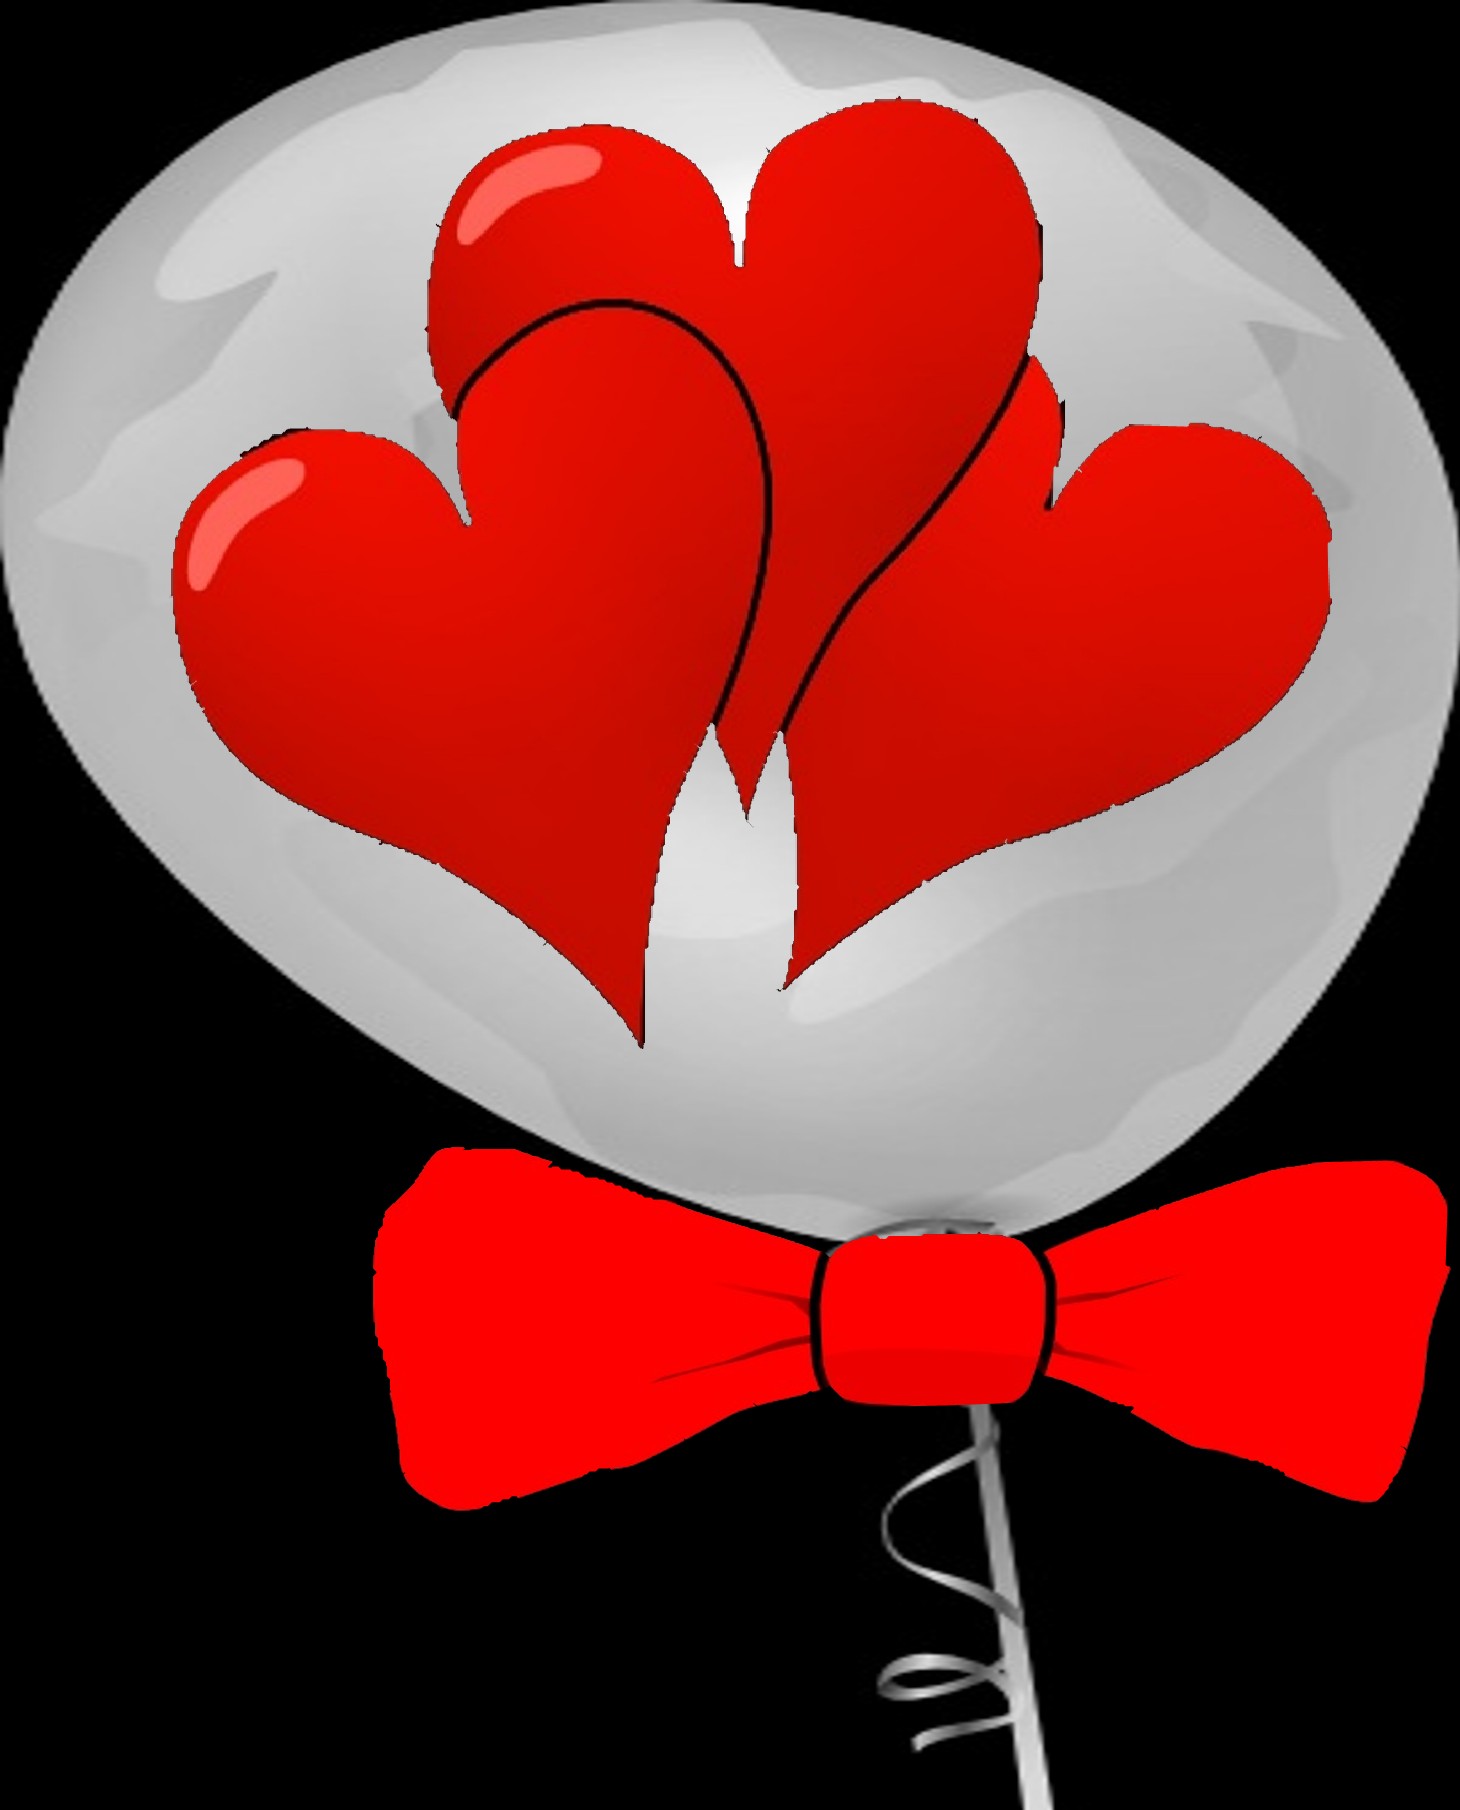 Valentine Balloon Idea